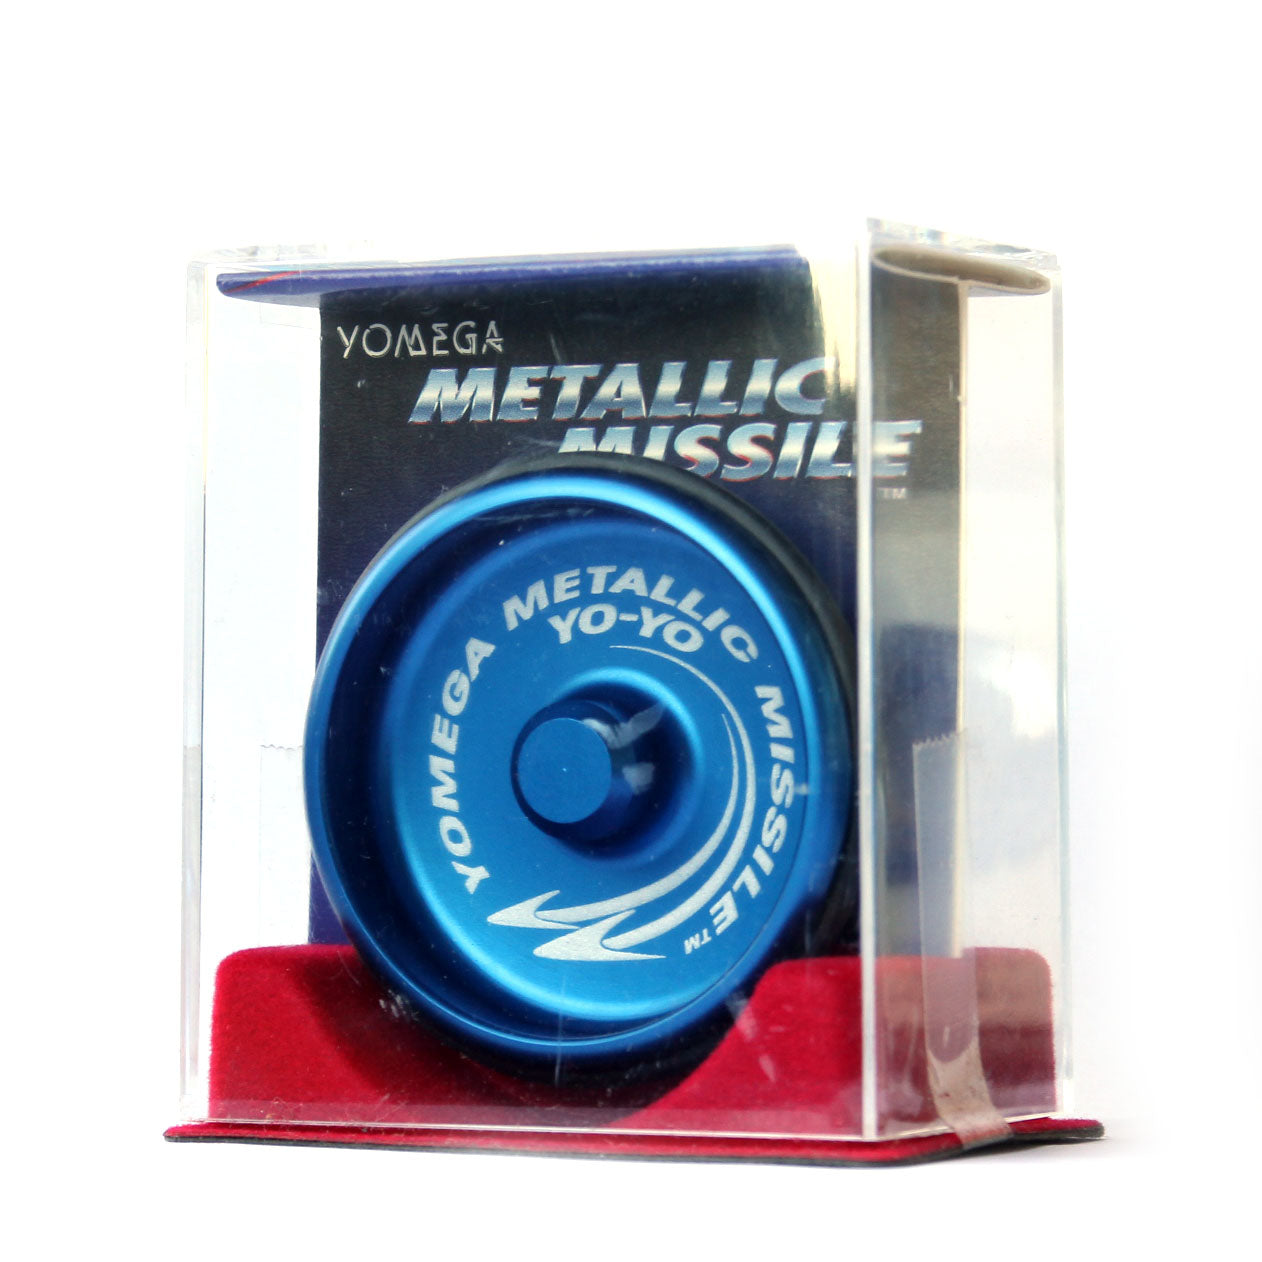 Metallic Missile - Yomega